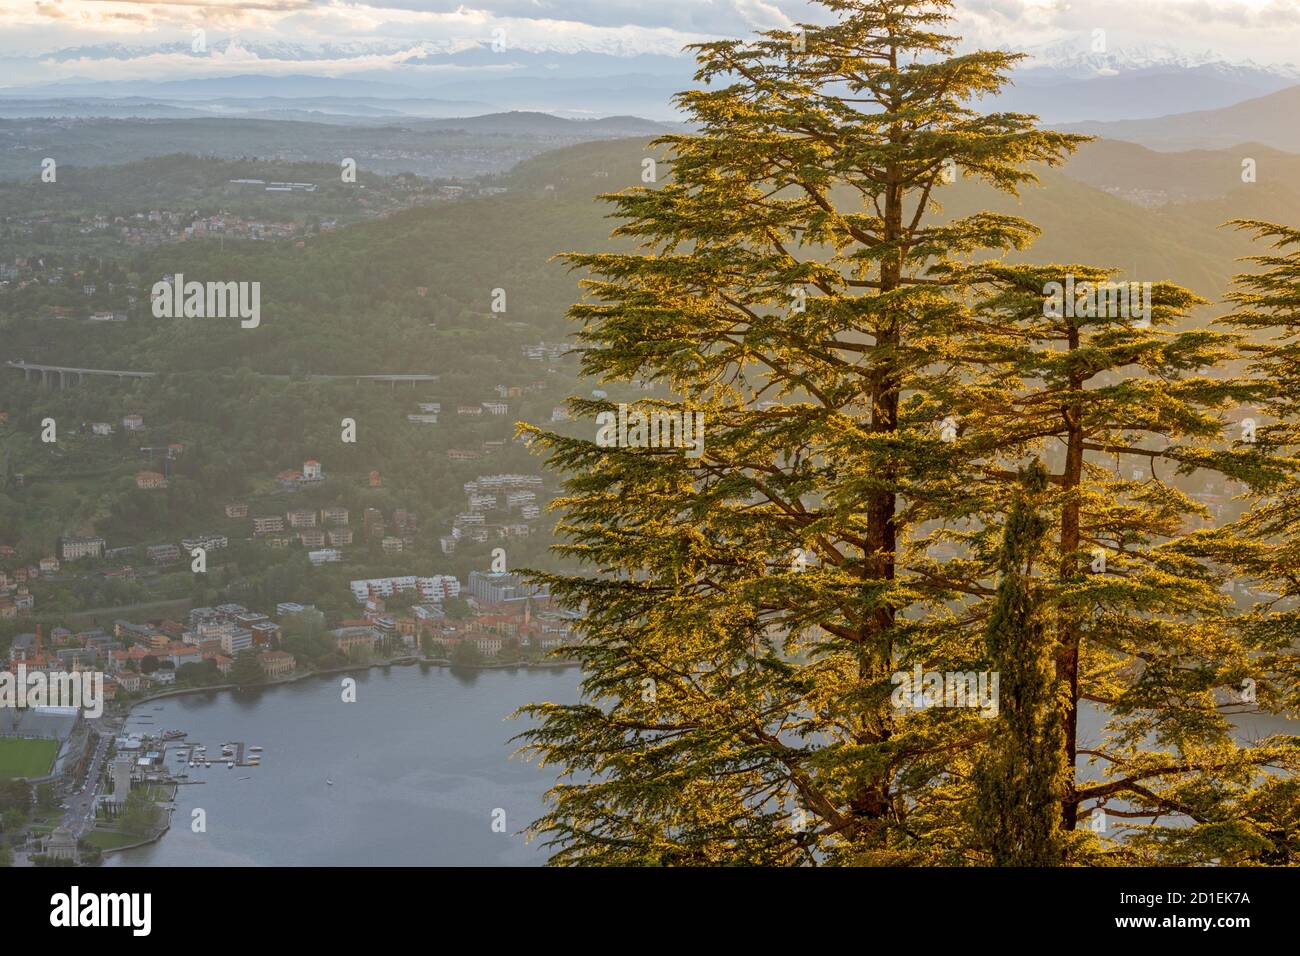 Como - The needles tree in the backlight over the Lago di Como lake (Brunate). Stock Photo